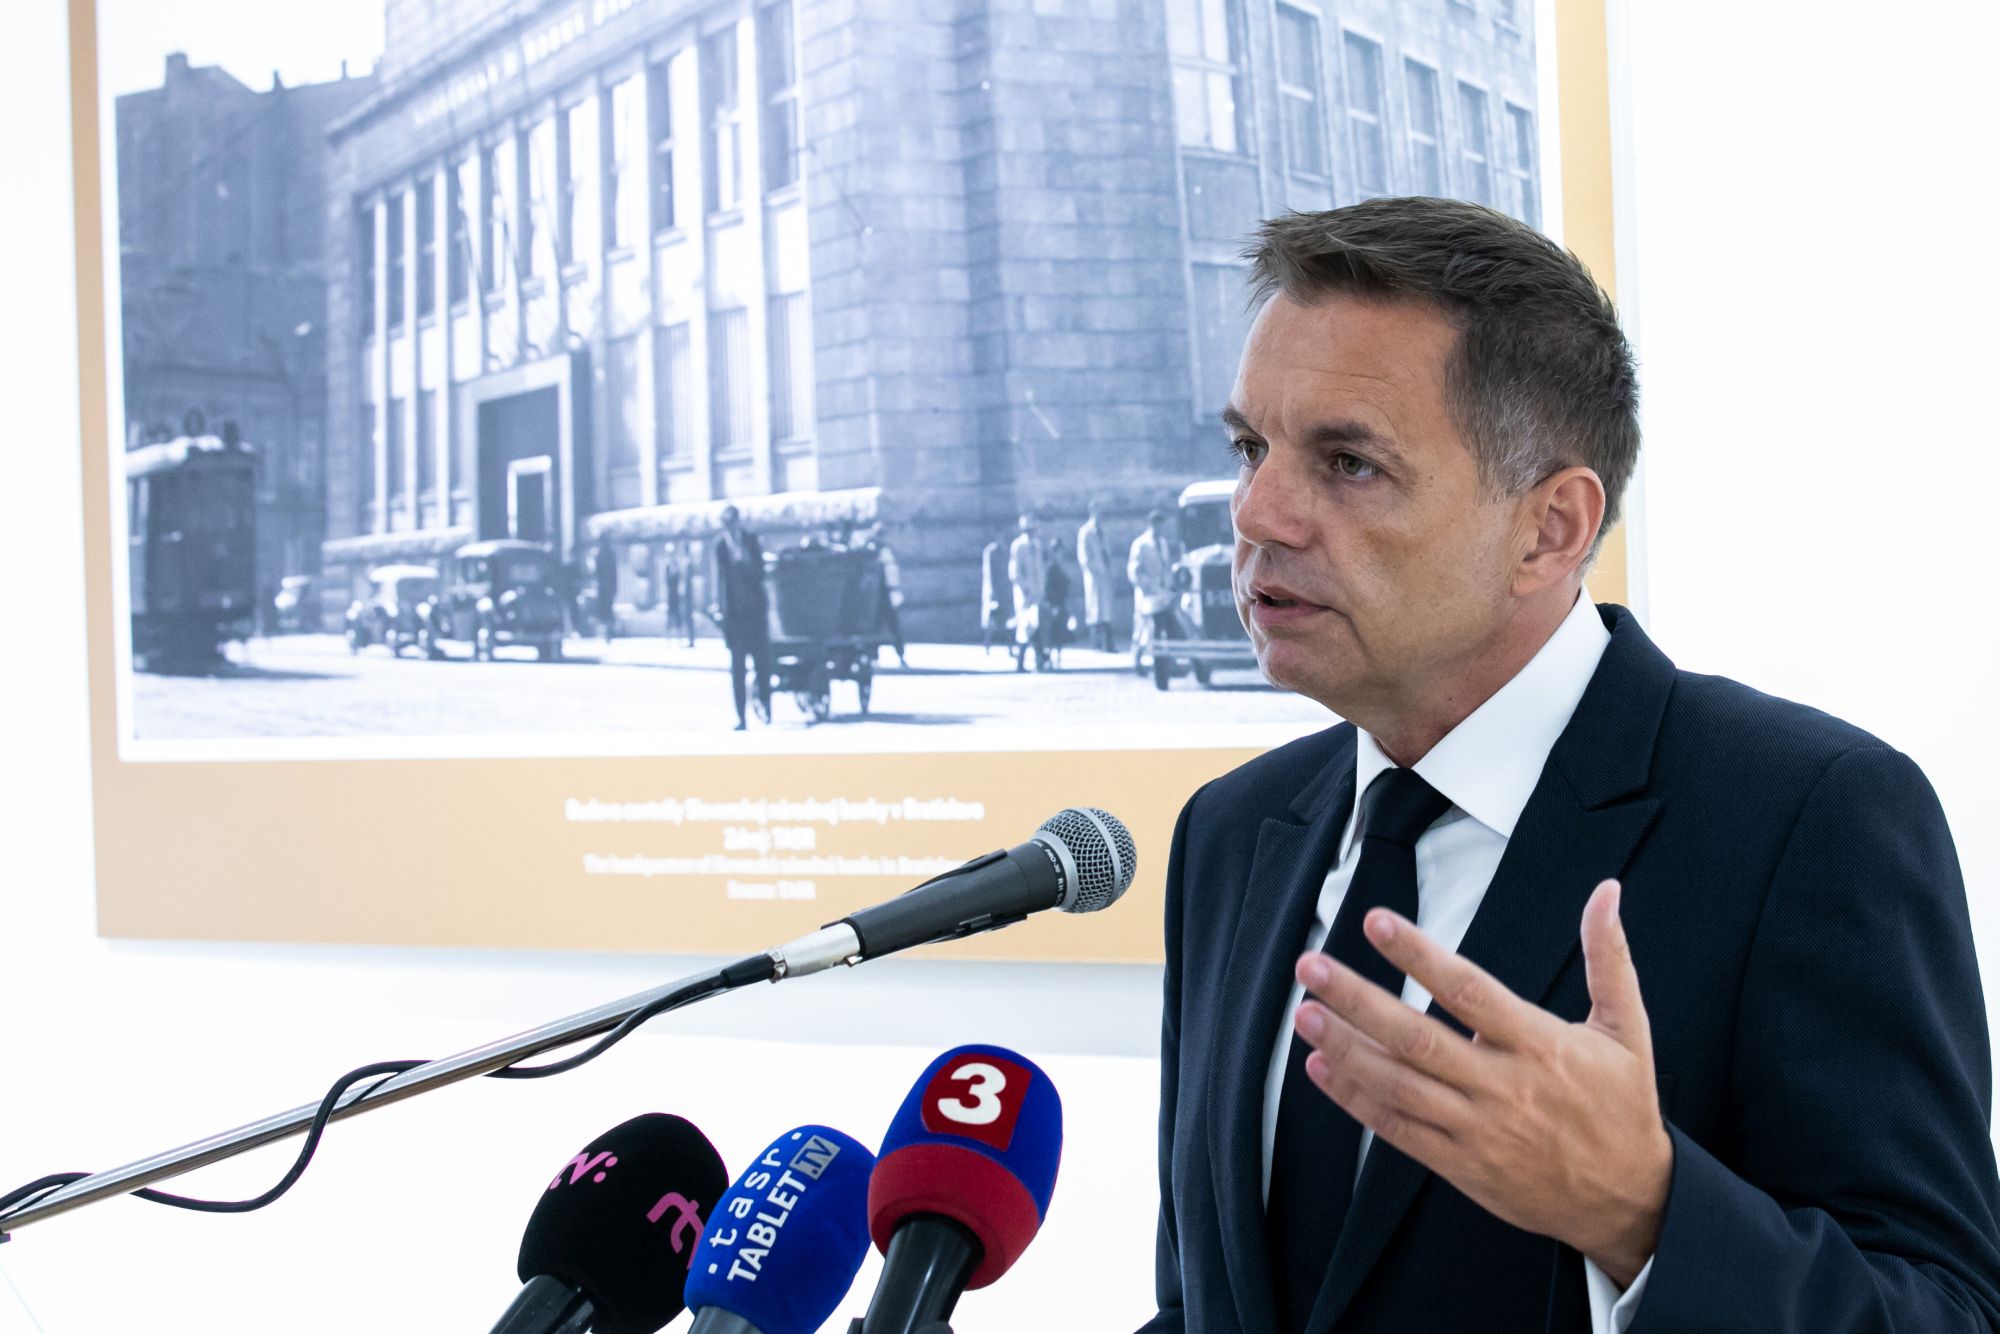 Otvorenie výstavy Hrdinovia Slovenskej národnej banky v SNP